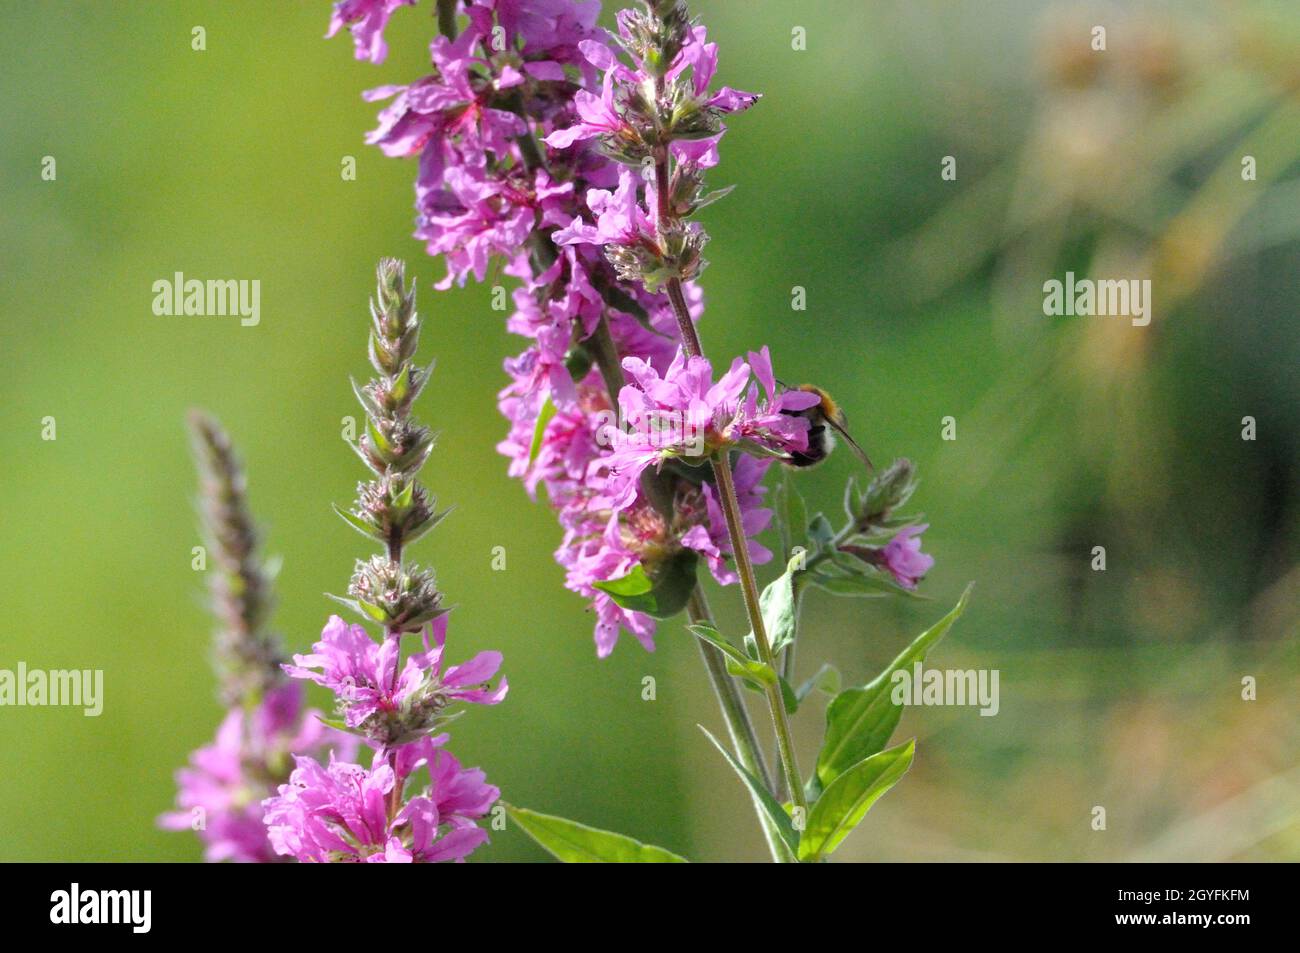 Gewöhnlicher Blutweiderich (Lythrum salicaria) im Garten an einem künstlichen Gartenteich lädt Insekten (hier Bienen) zum Naschen ein. - perde viola Foto Stock